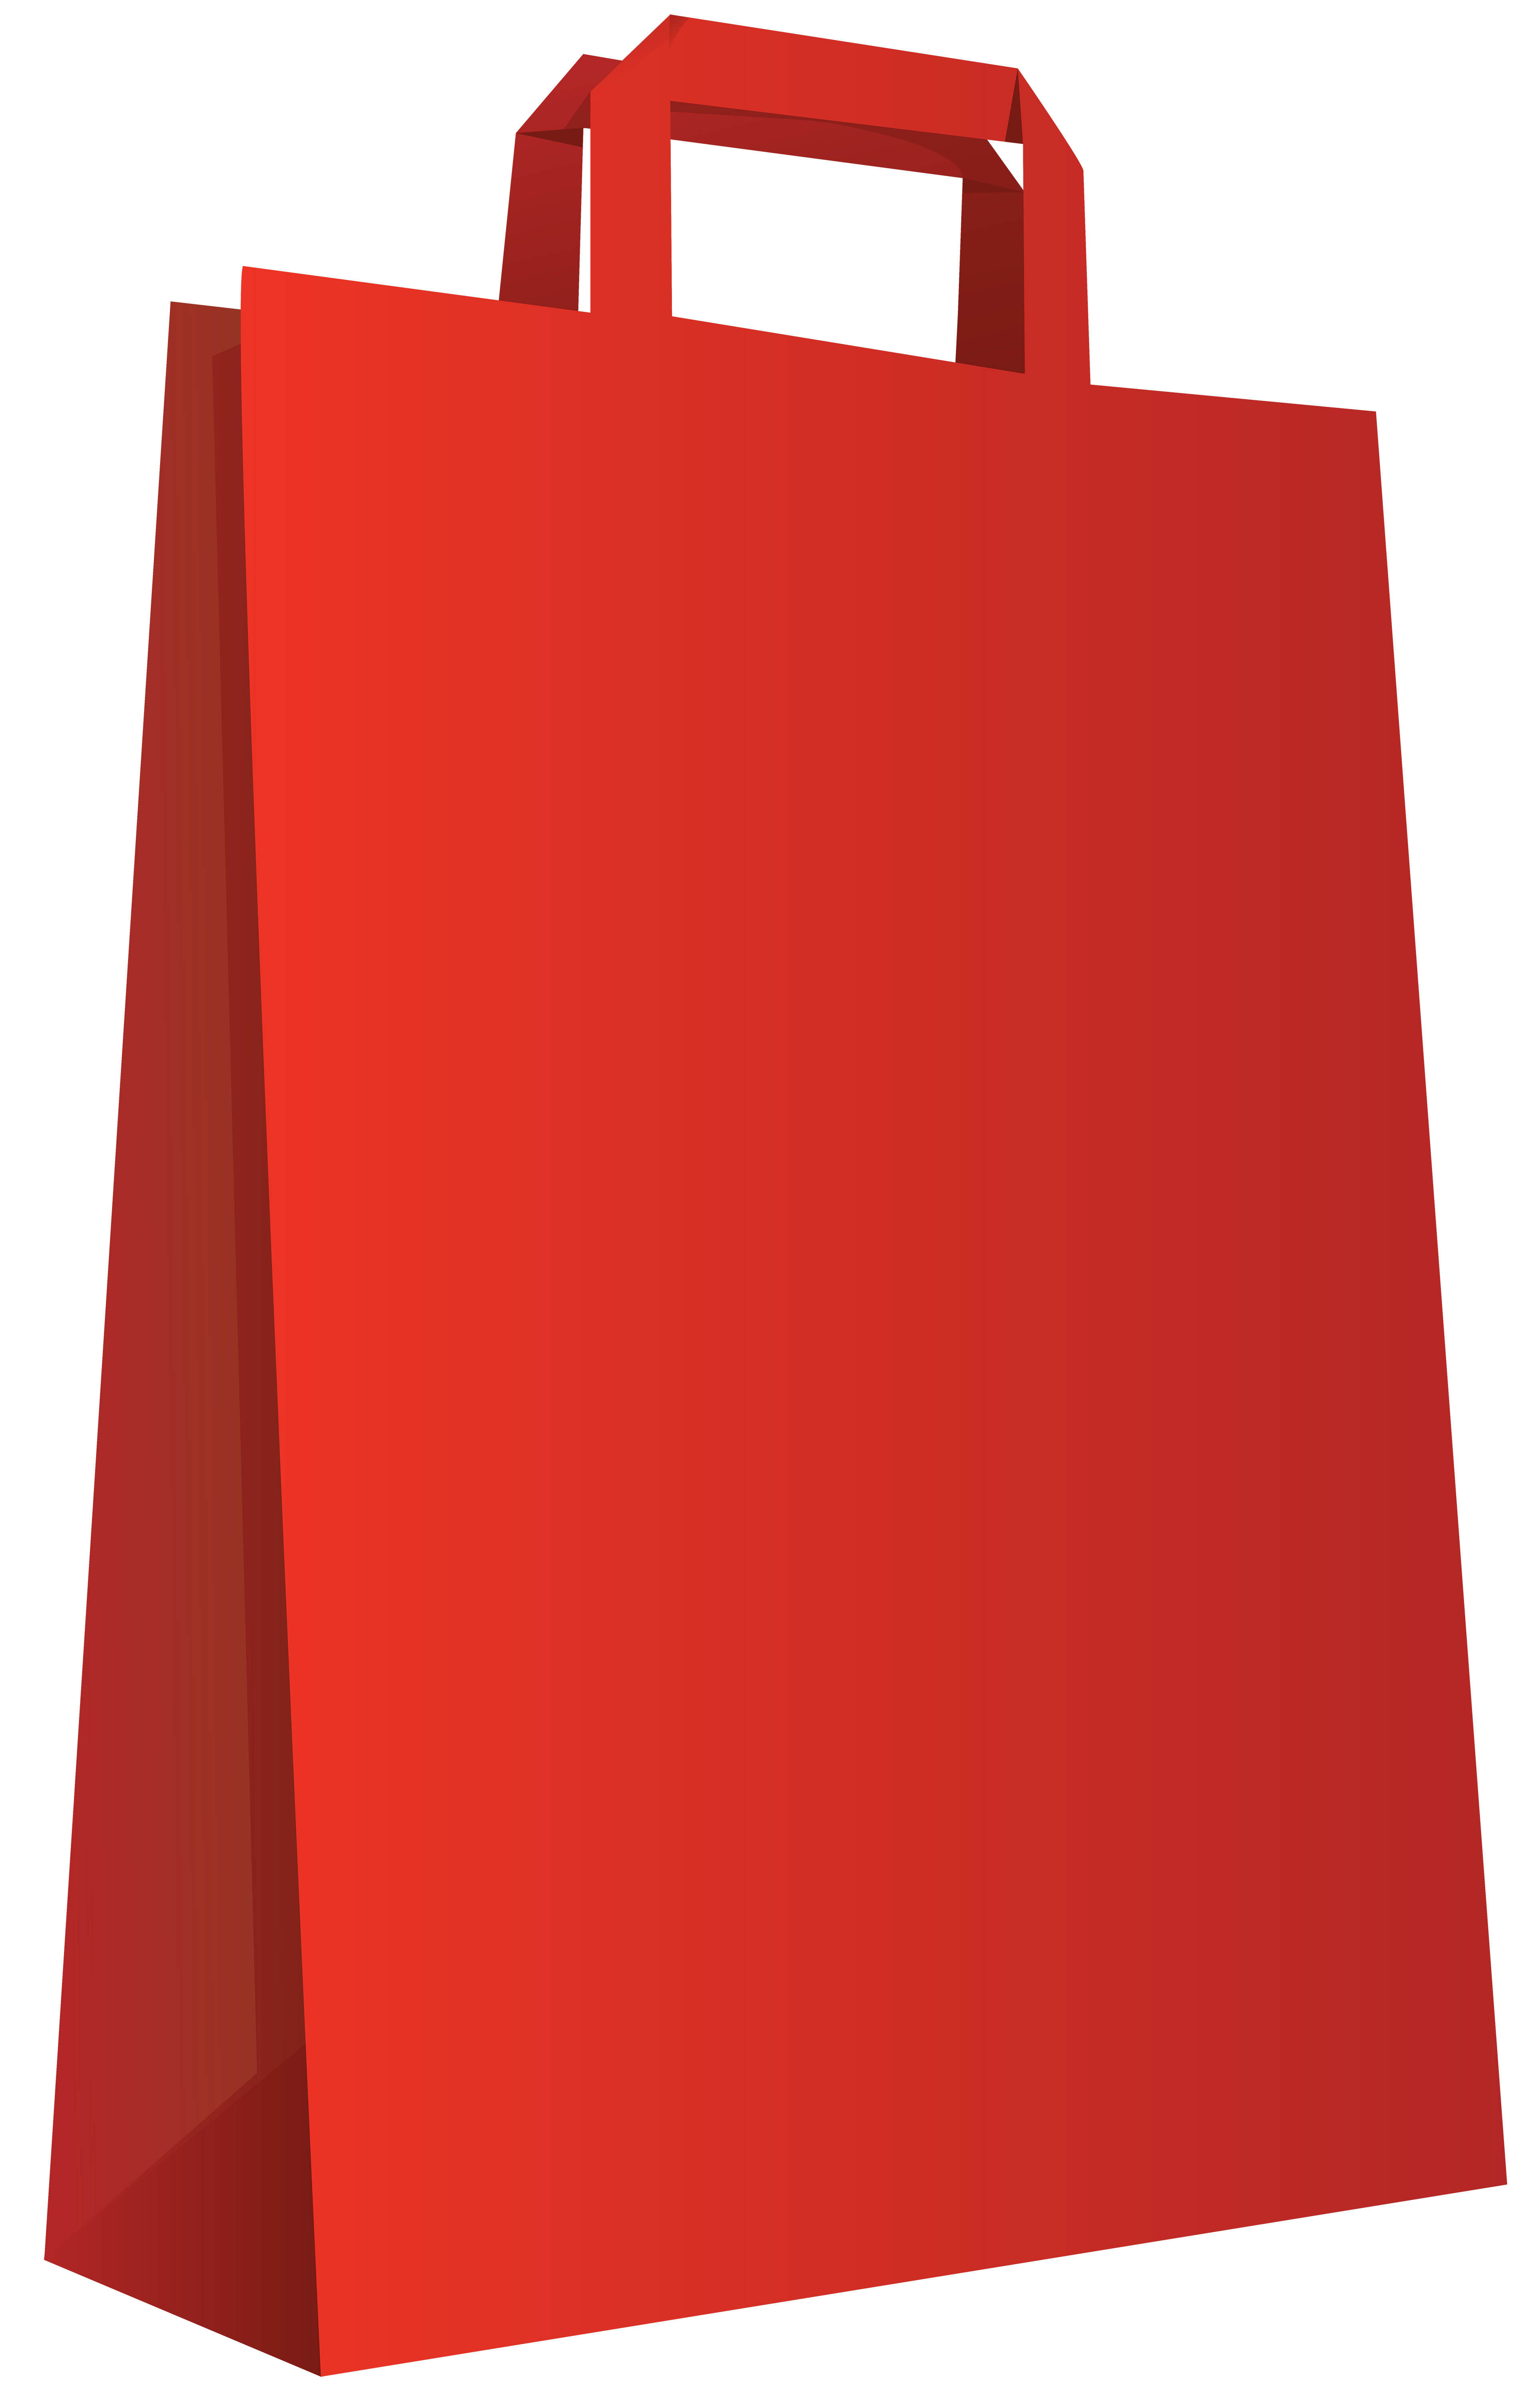 Red Bag Transparent PNG Clip Art Image